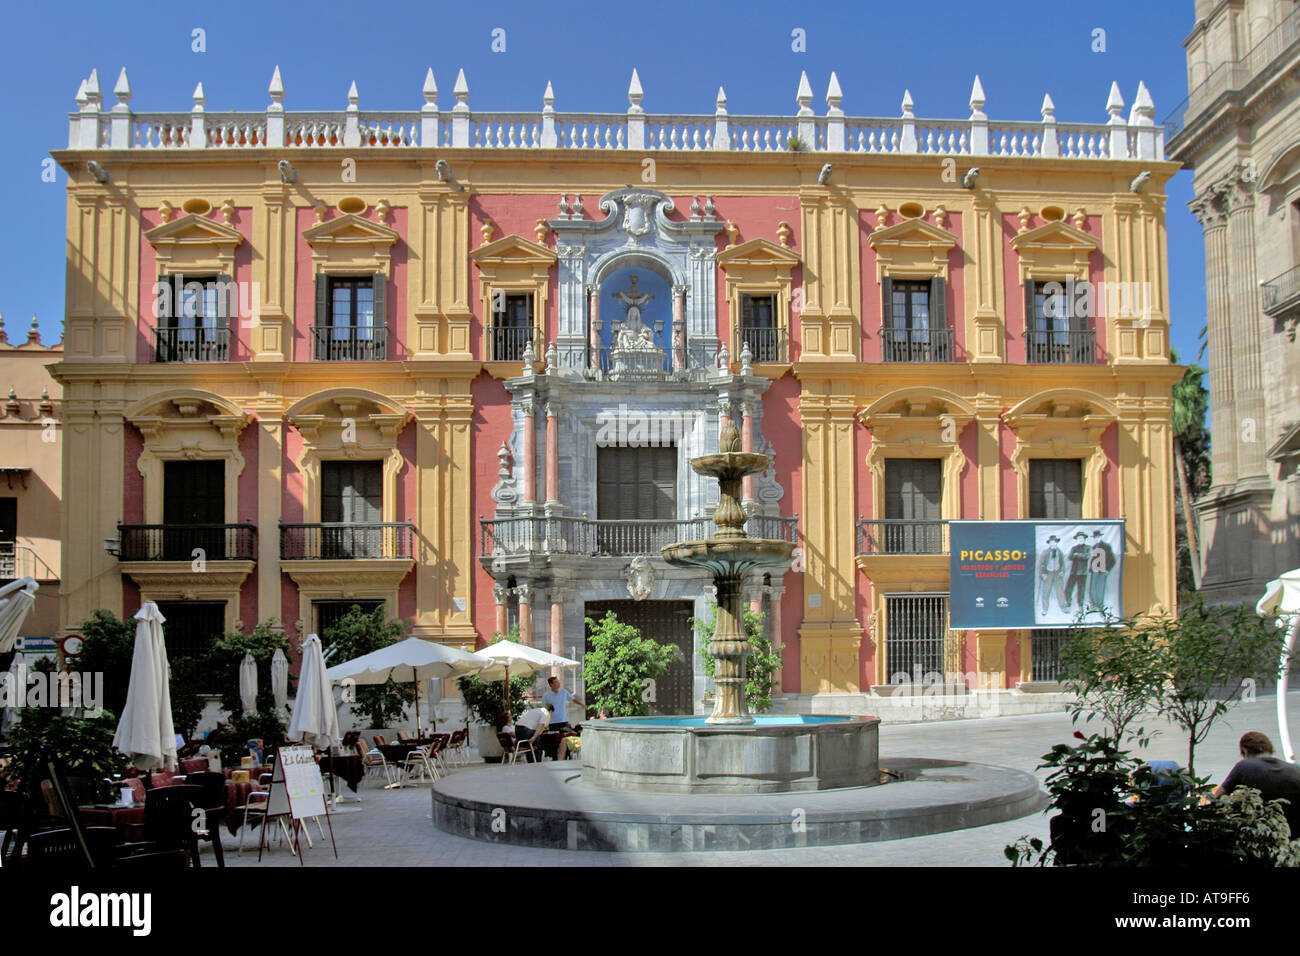 Spanien Malaga Plaza del Obispo Palacio Episcopal Fountain Picasso Museum archbishop s palace Stock Photo